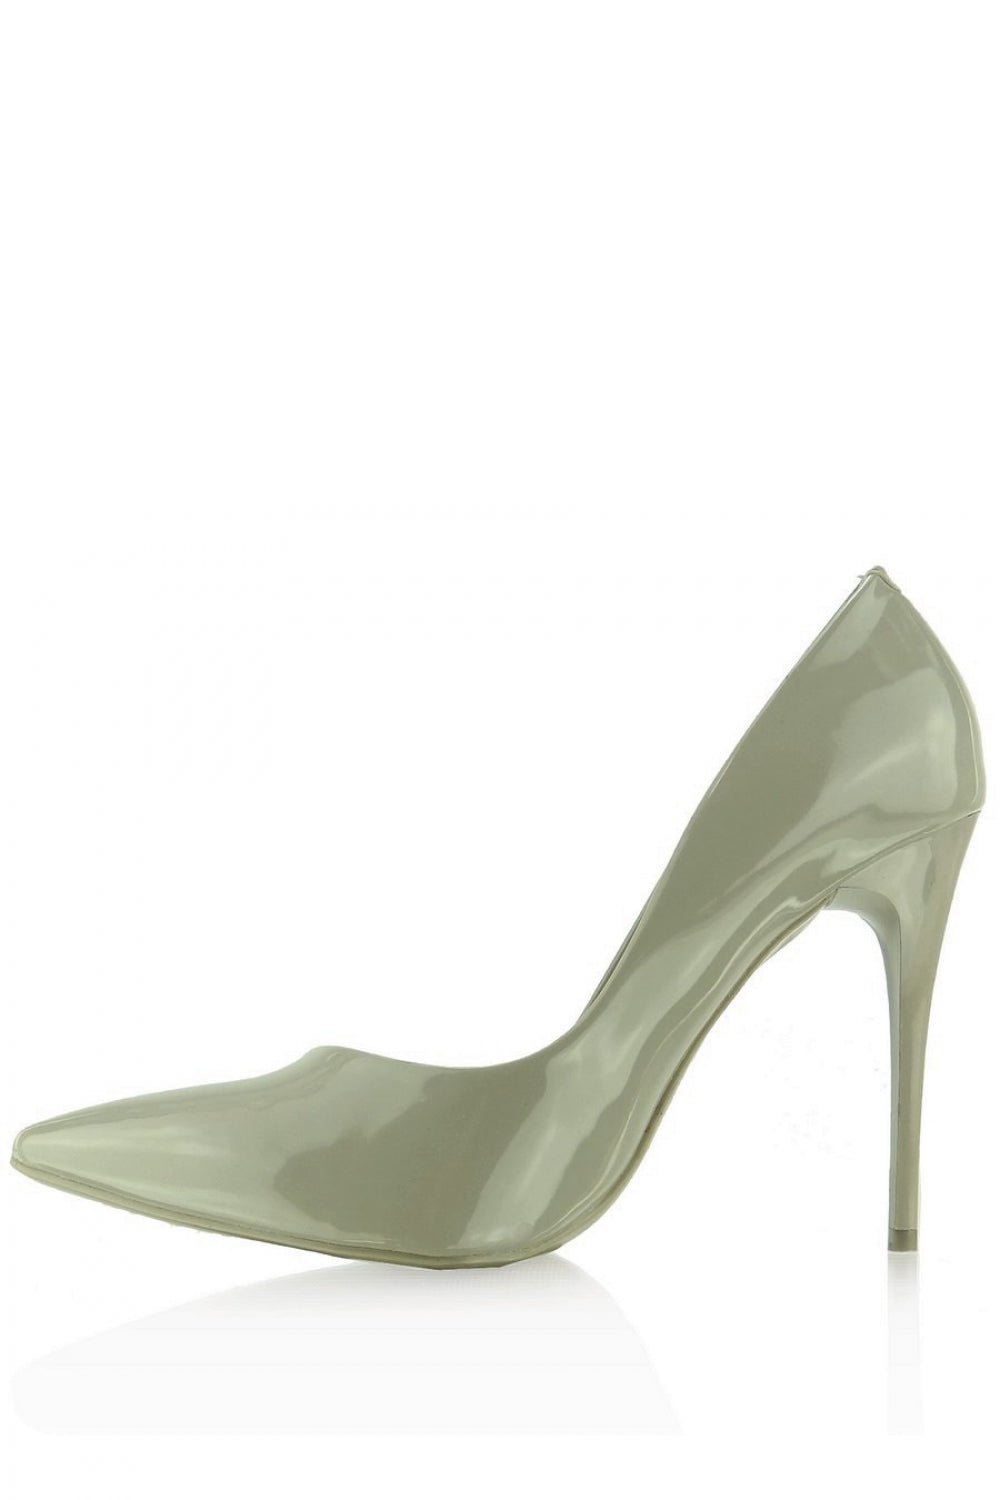 High heels model 42574 Heppin